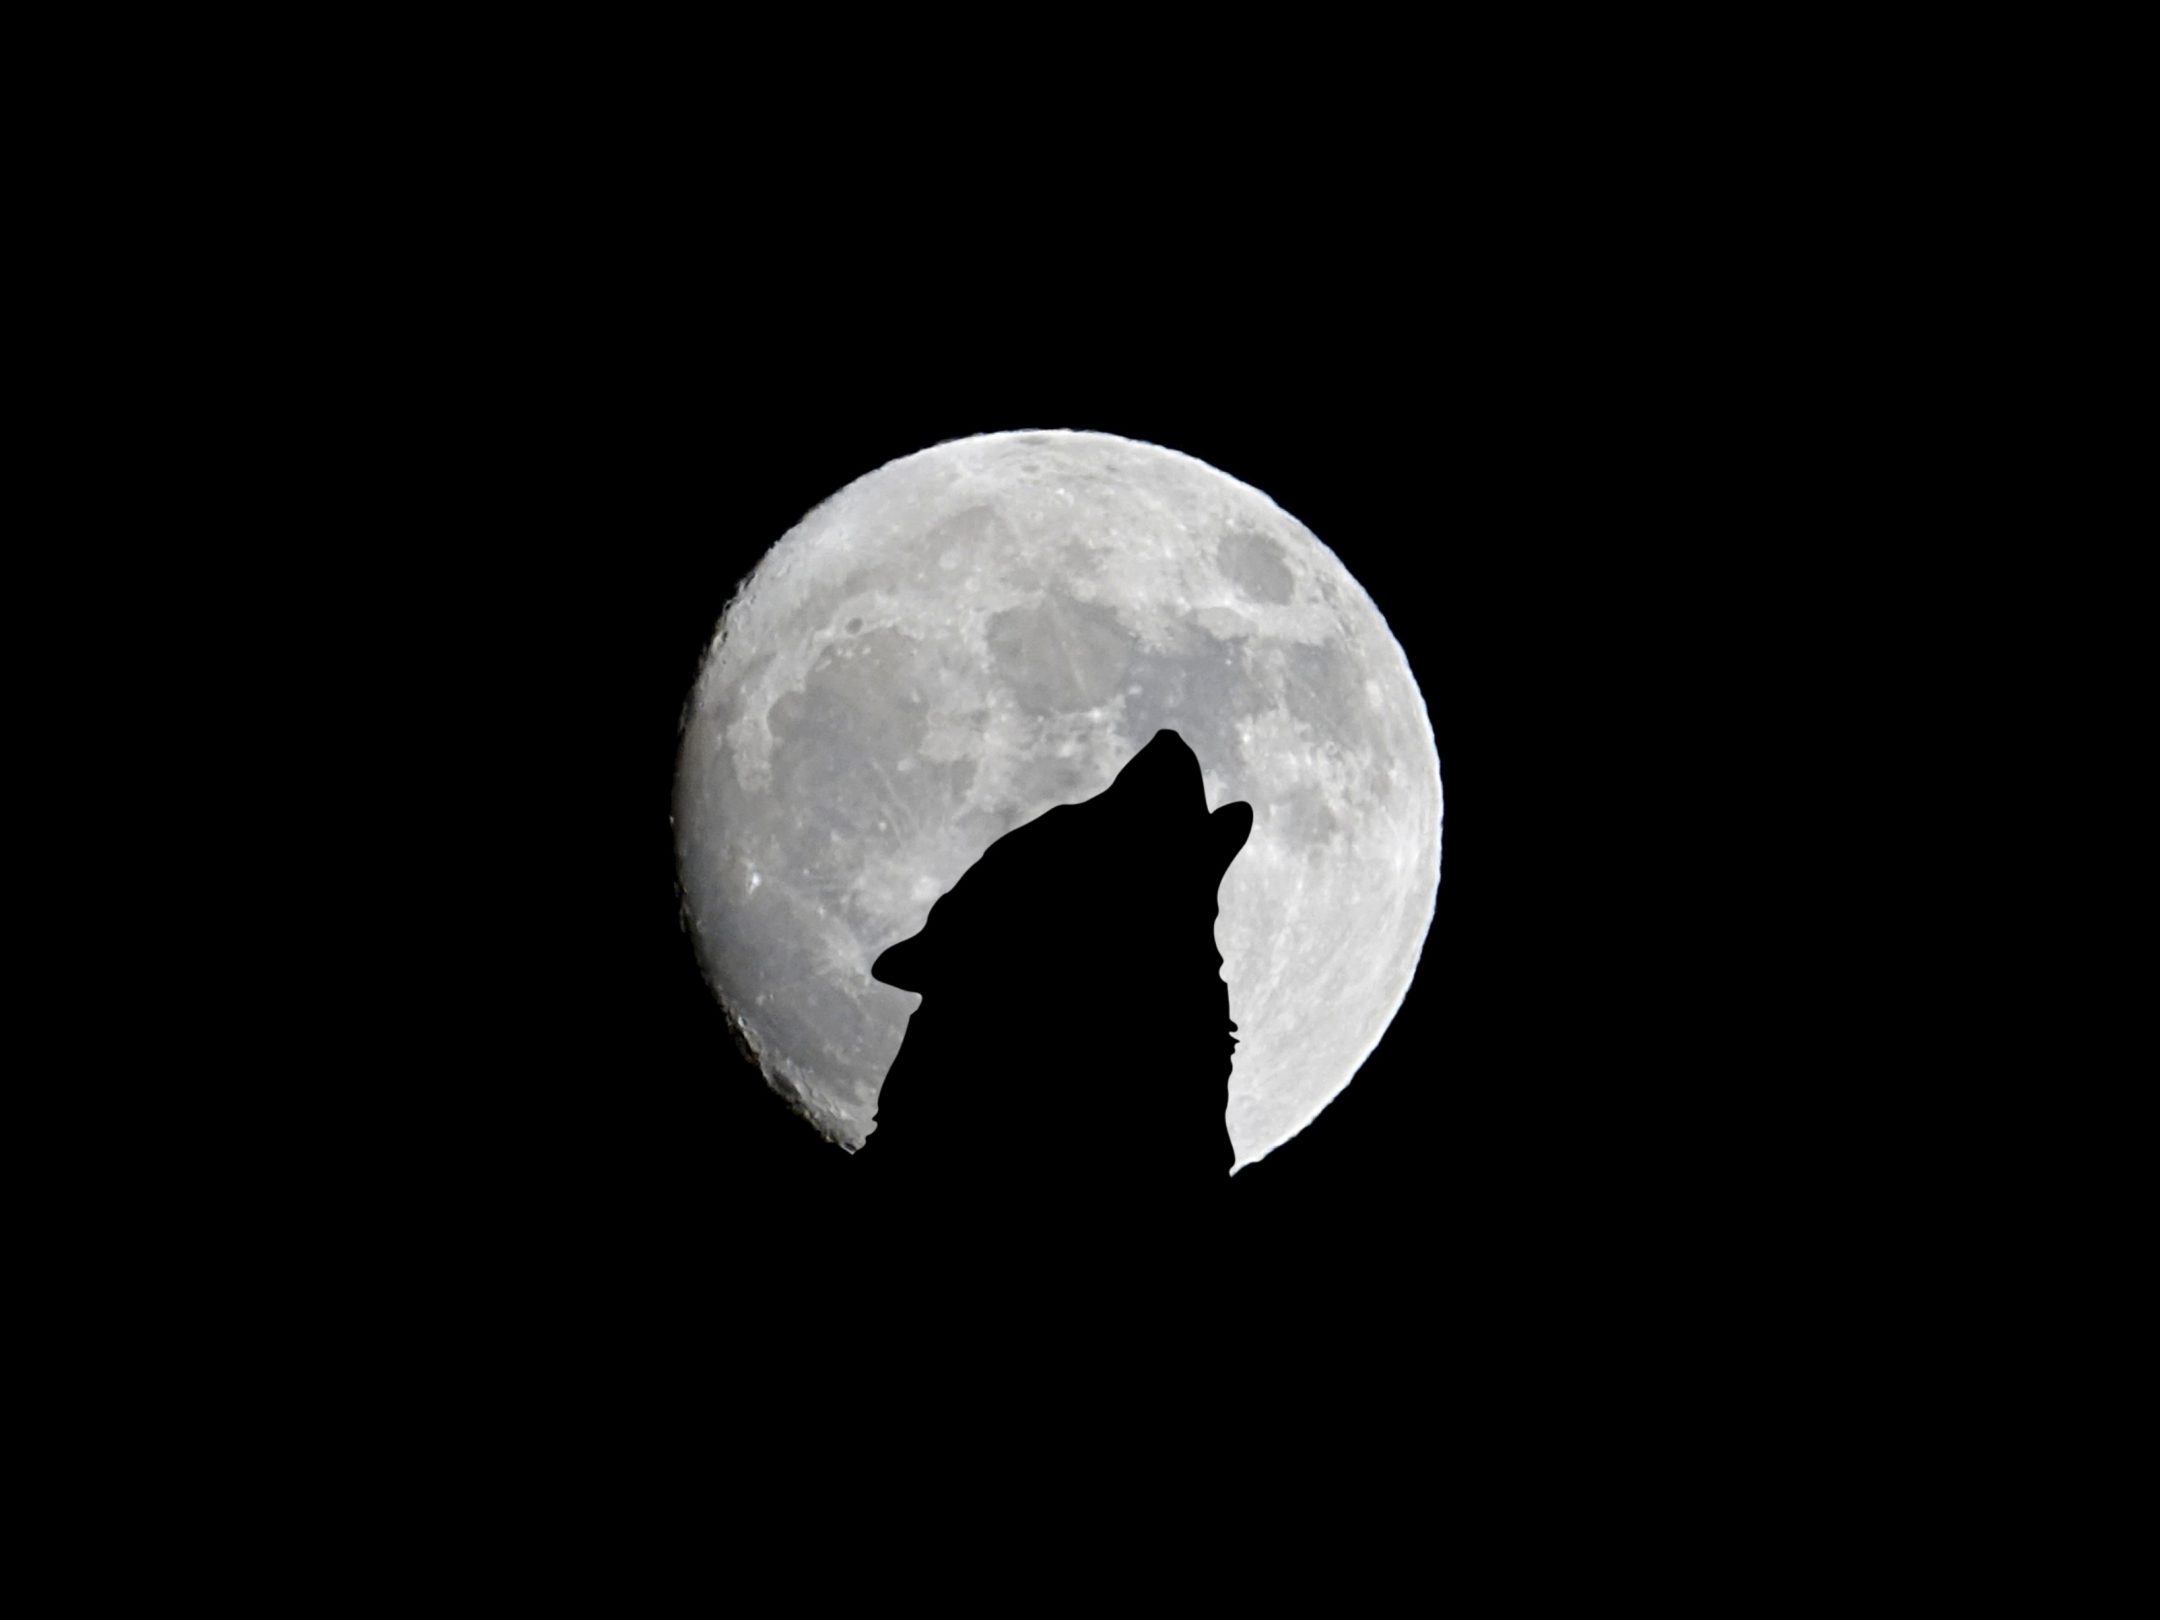 2160x1620 iPad wallpaper 4k Silhouette of Wolf Full Moon Night Darkness iPad Wallpaper 2160x1620 pixels resolution